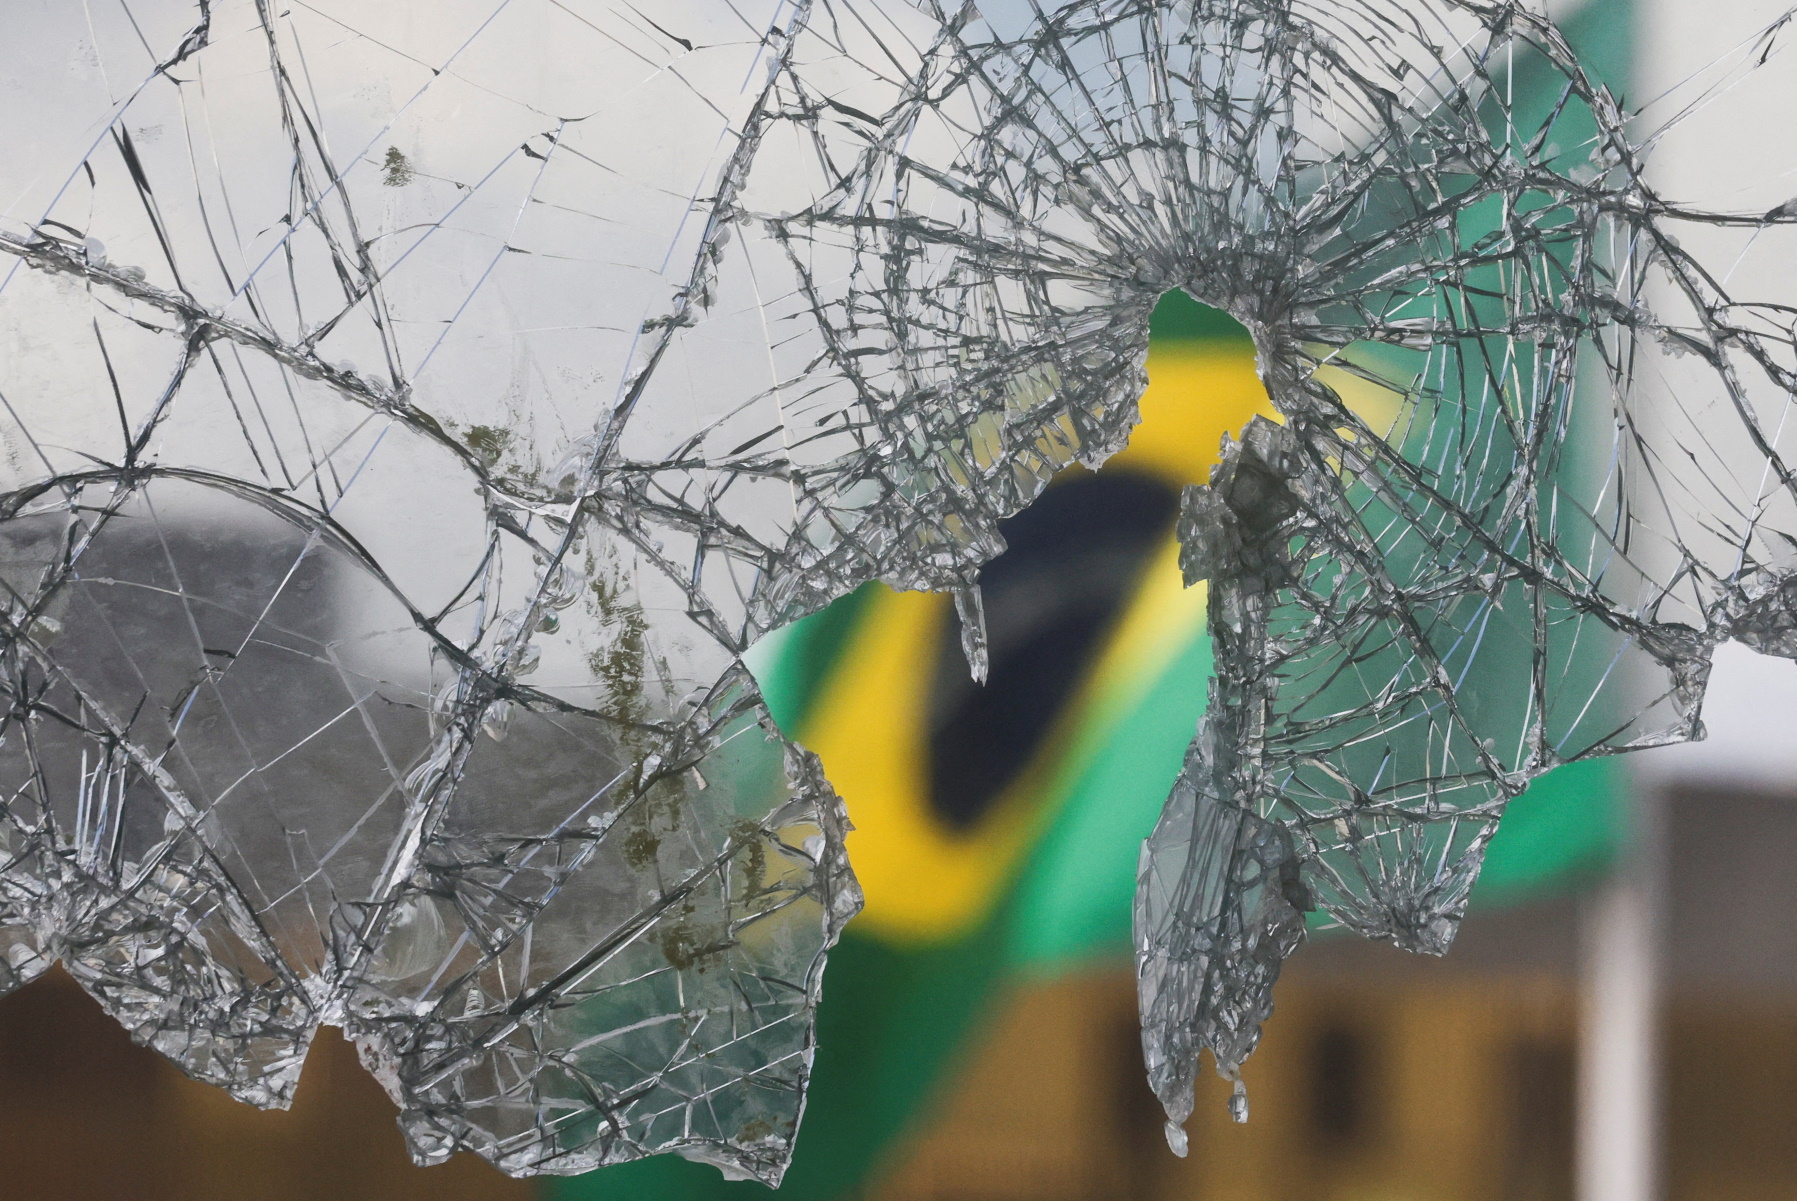 Βραζιλία: Νέο κάλεσμα για ταραχές από οπαδούς του Μπολσονάρο – Δικαστική εντολή να επέμβει η αστυνομία